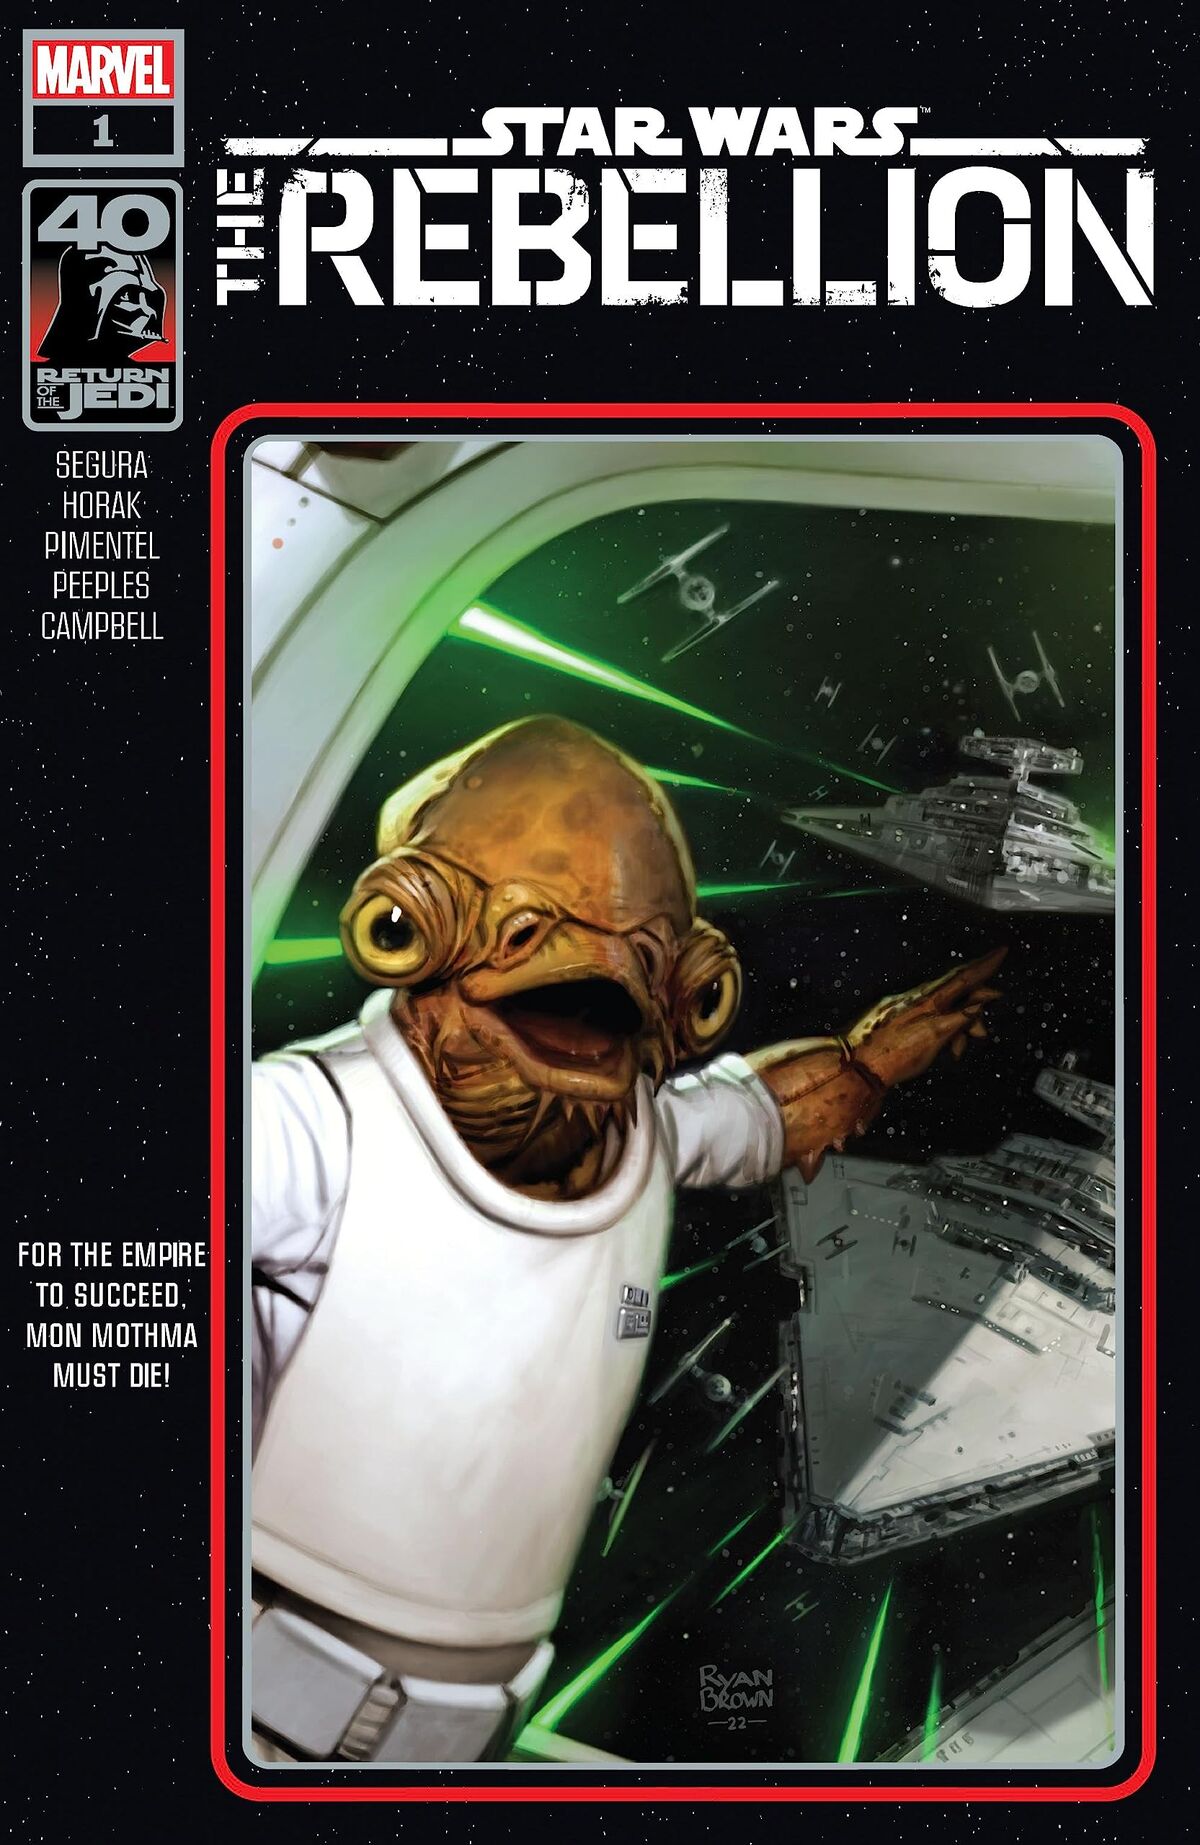 Star Wars: Return of the Jedi (A Collector's Classic Board Book) (Board Book)